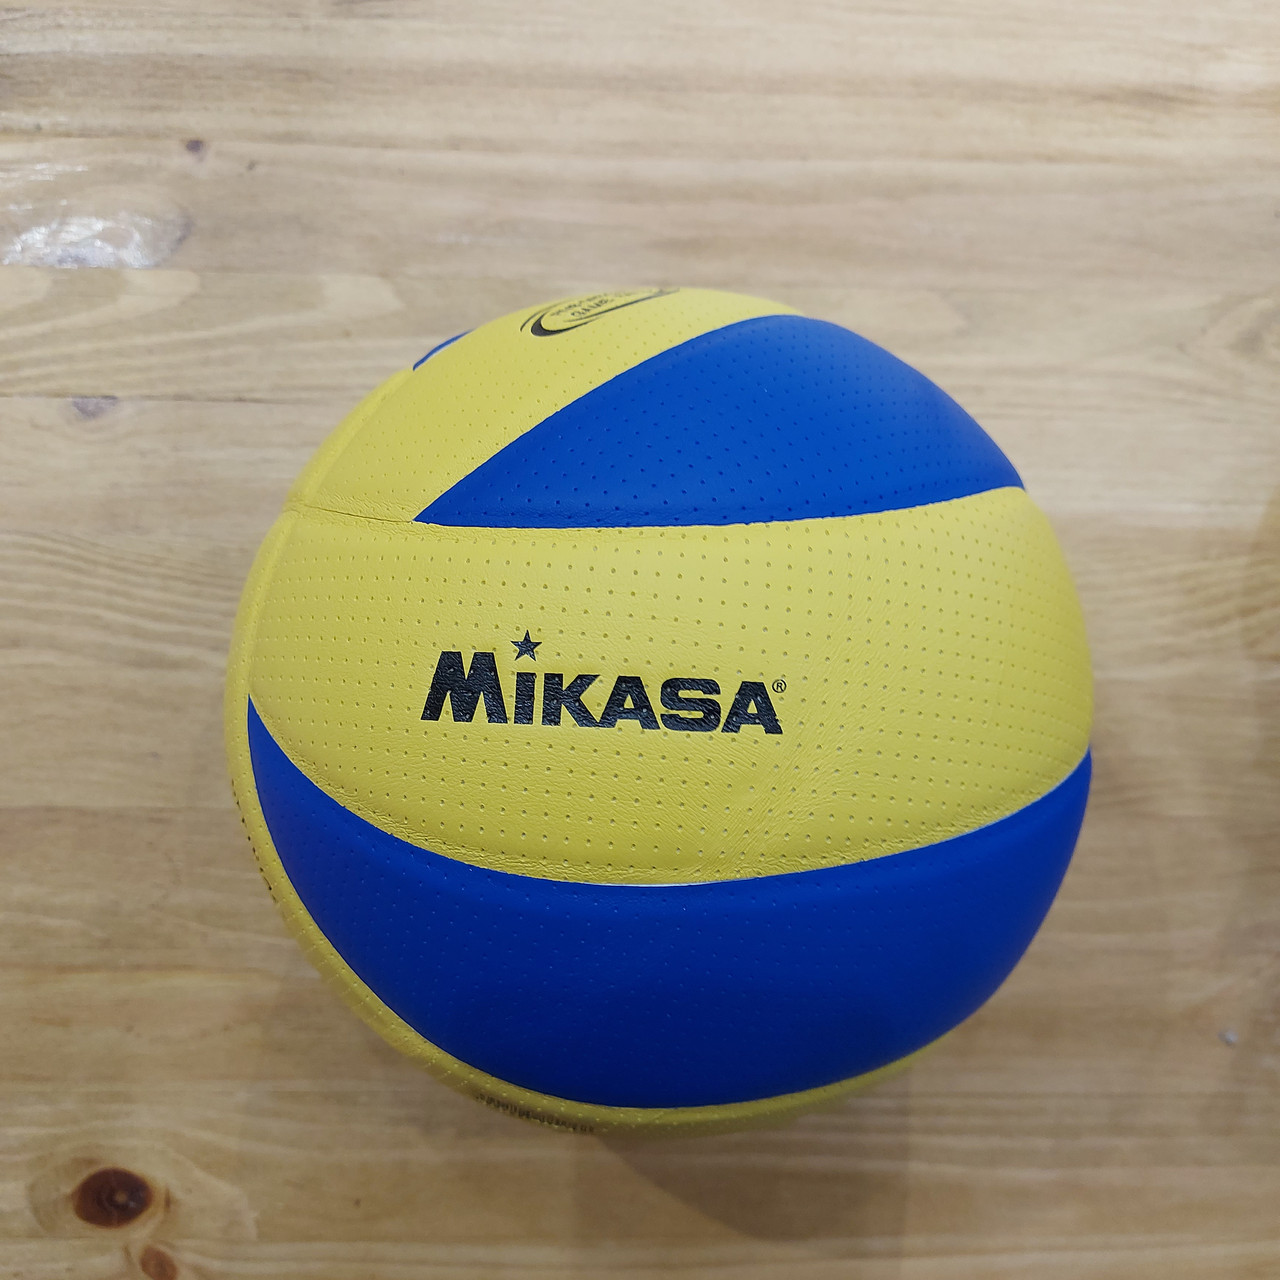 Оригинальный волейбольный мяч "Mikasa" MVA200. Made in Japan. Профессиональный.